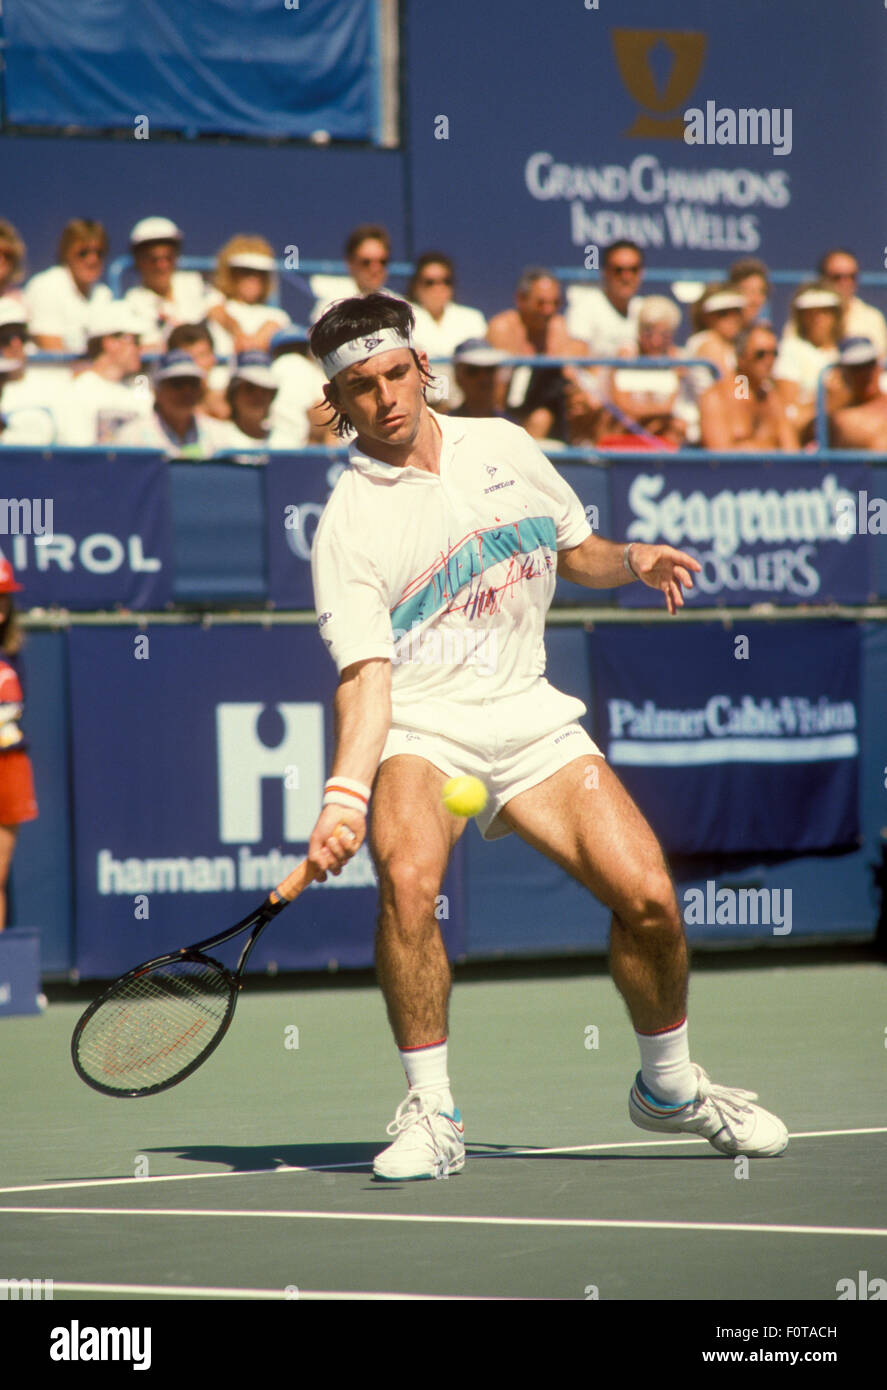 Emilio Sánchez en acción contra Boris Becker en el torneo de la Copa de Campeones de Newsweek en Indian Wells, CA el 6 de marzo de 1988 Foto de stock